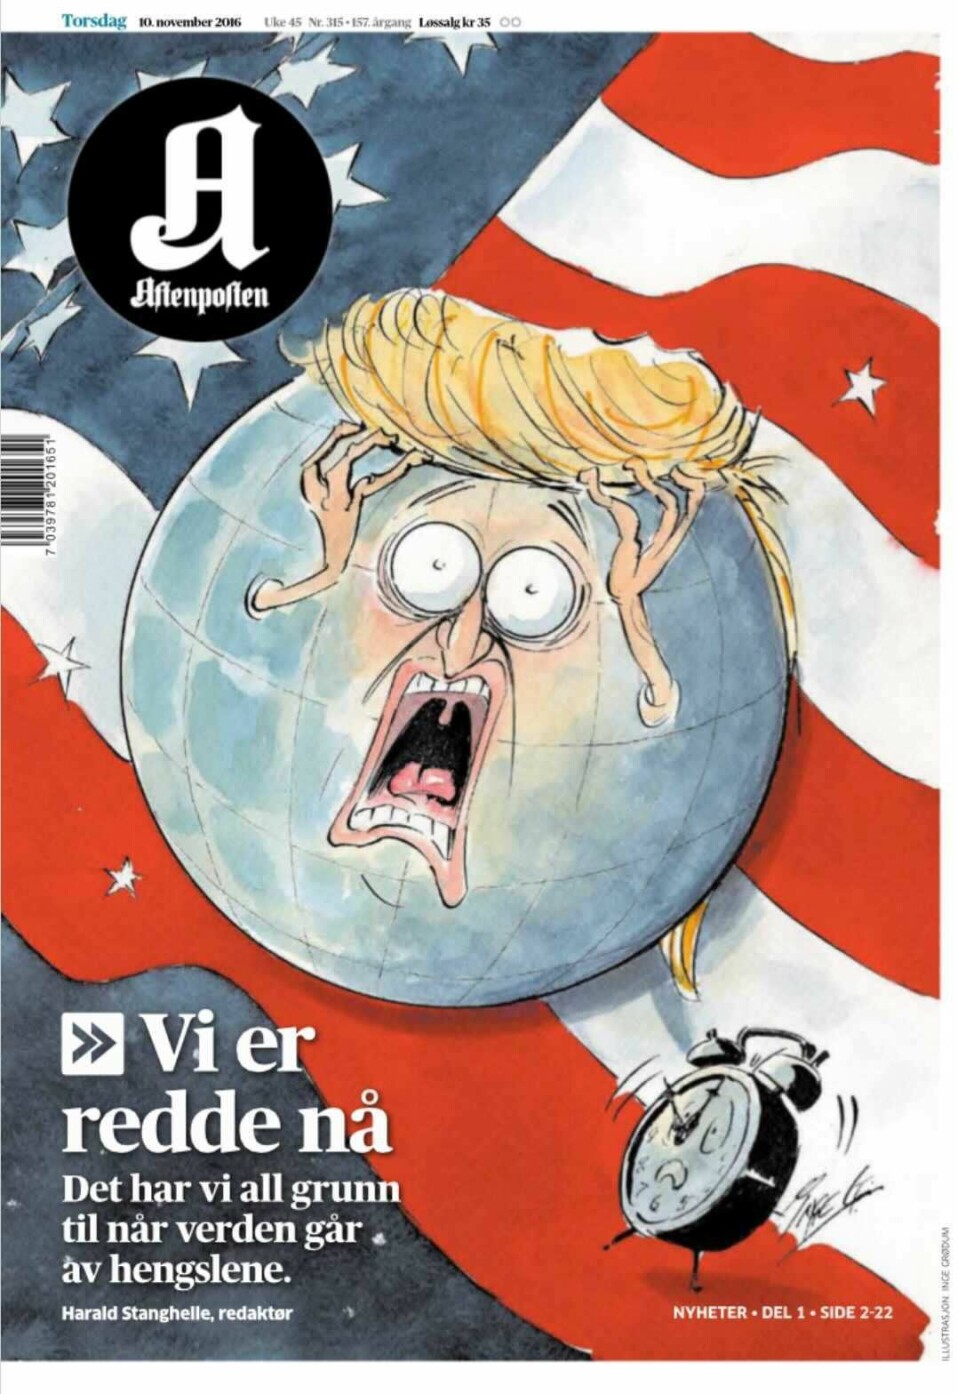 Aftenpostens forside 1. november 2016 var illustrert av Inge Grødum.